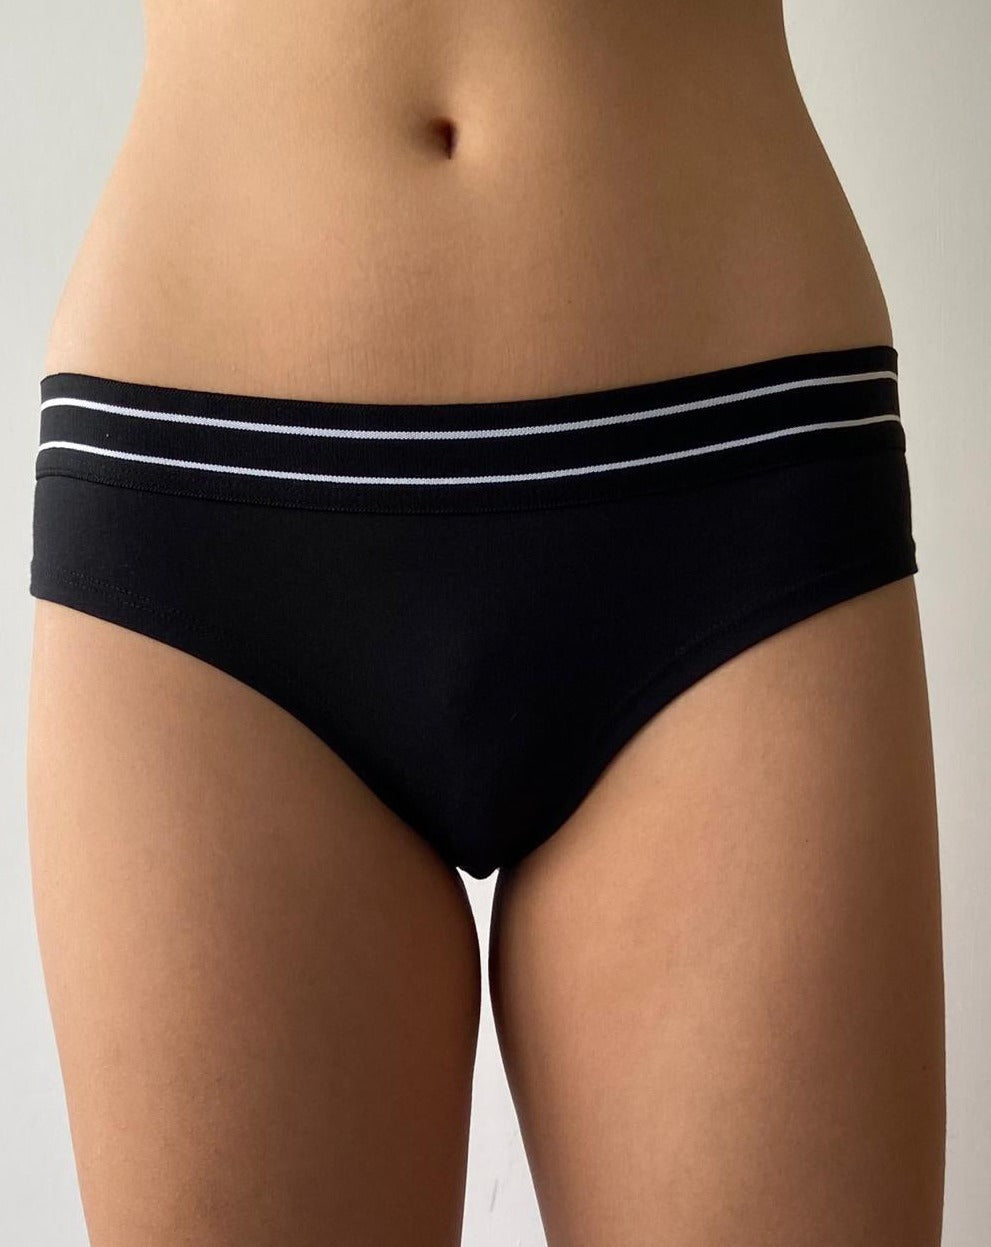 Women_s-black-underwear-panties-lavender-dreams